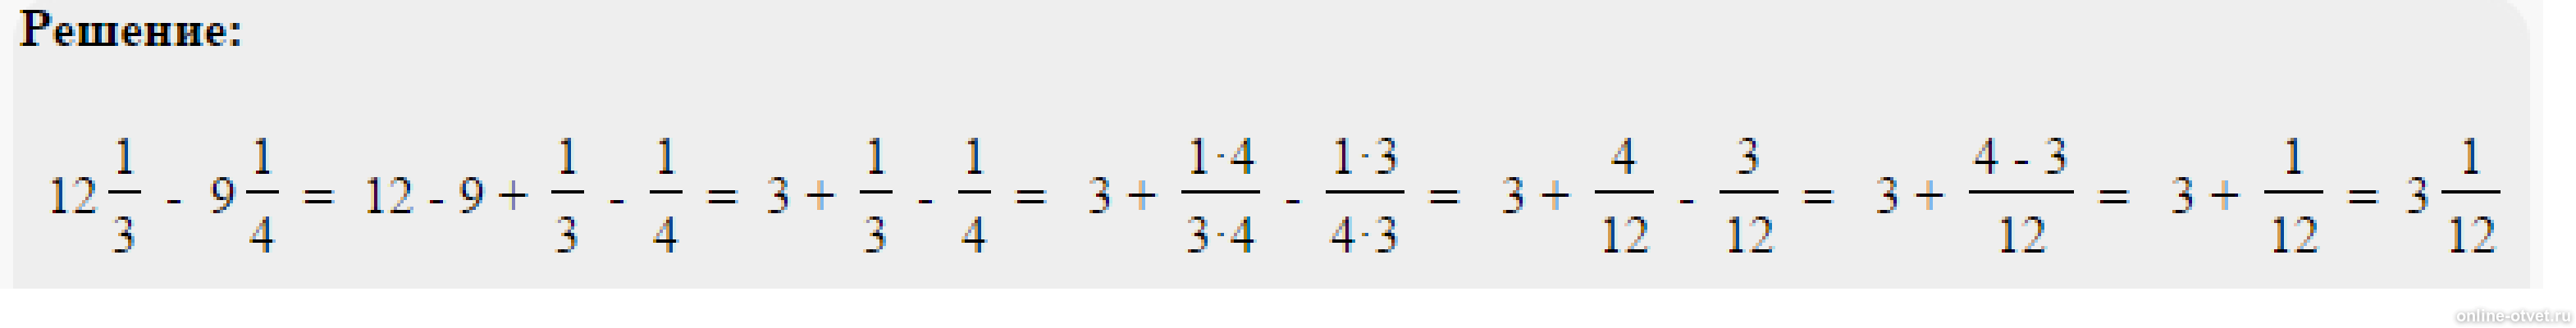 5 21 26 1 9 13. Решить пример одна целая одна пятая. Пример 4 целых3/8*2 целых 3/5*8/9. Решить пример 2 целых минус 1 целая 3/5. Минус 1 целая 3/8 минус 2 целых 5/12.